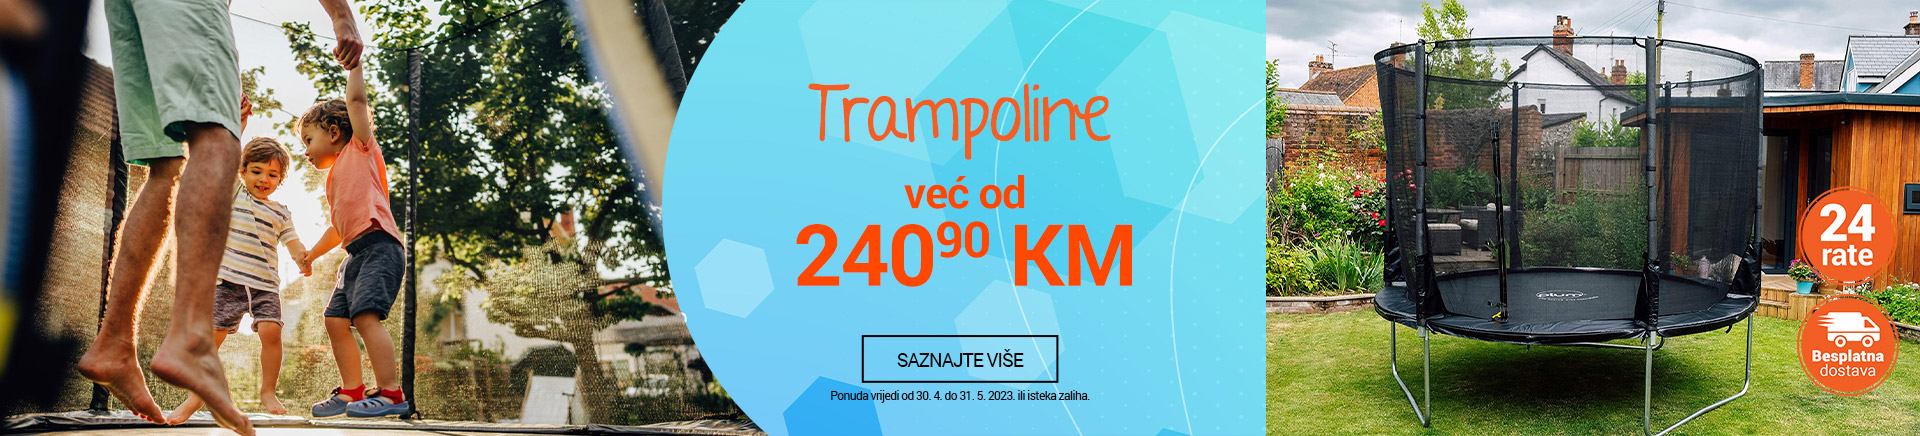 BA trampolini Trampoline 2023 MOBILE 380 X 436.jpg